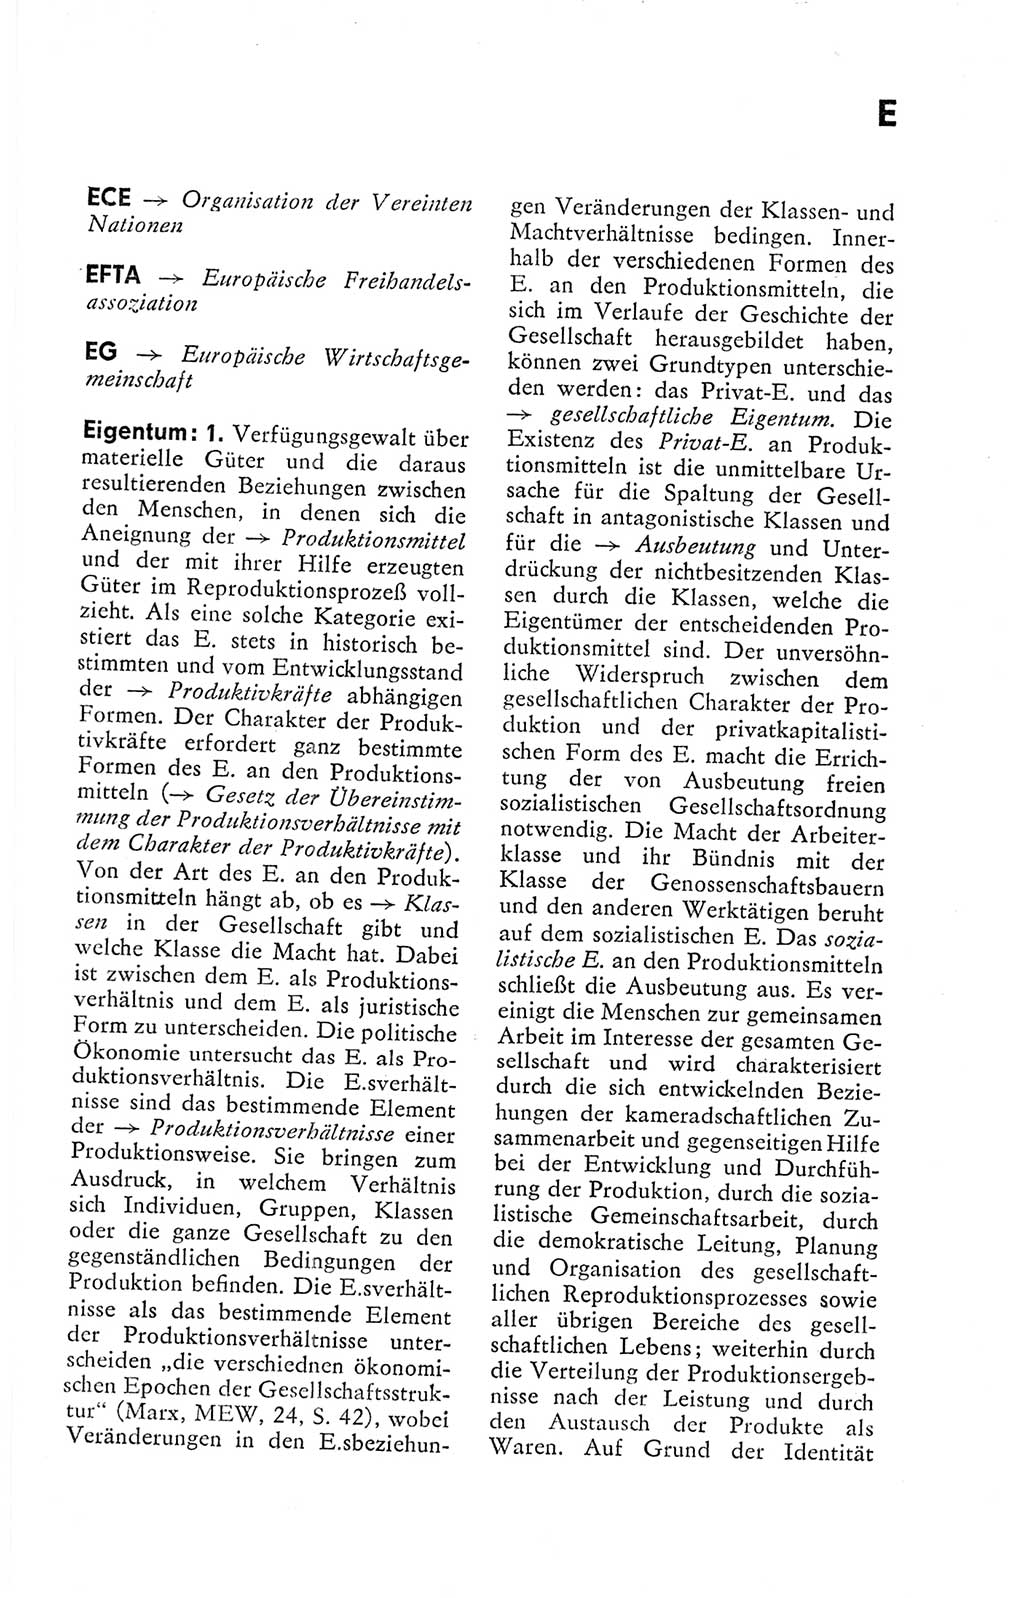 Kleines politisches Wörterbuch [Deutsche Demokratische Republik (DDR)] 1978, Seite 187 (Kl. pol. Wb. DDR 1978, S. 187)